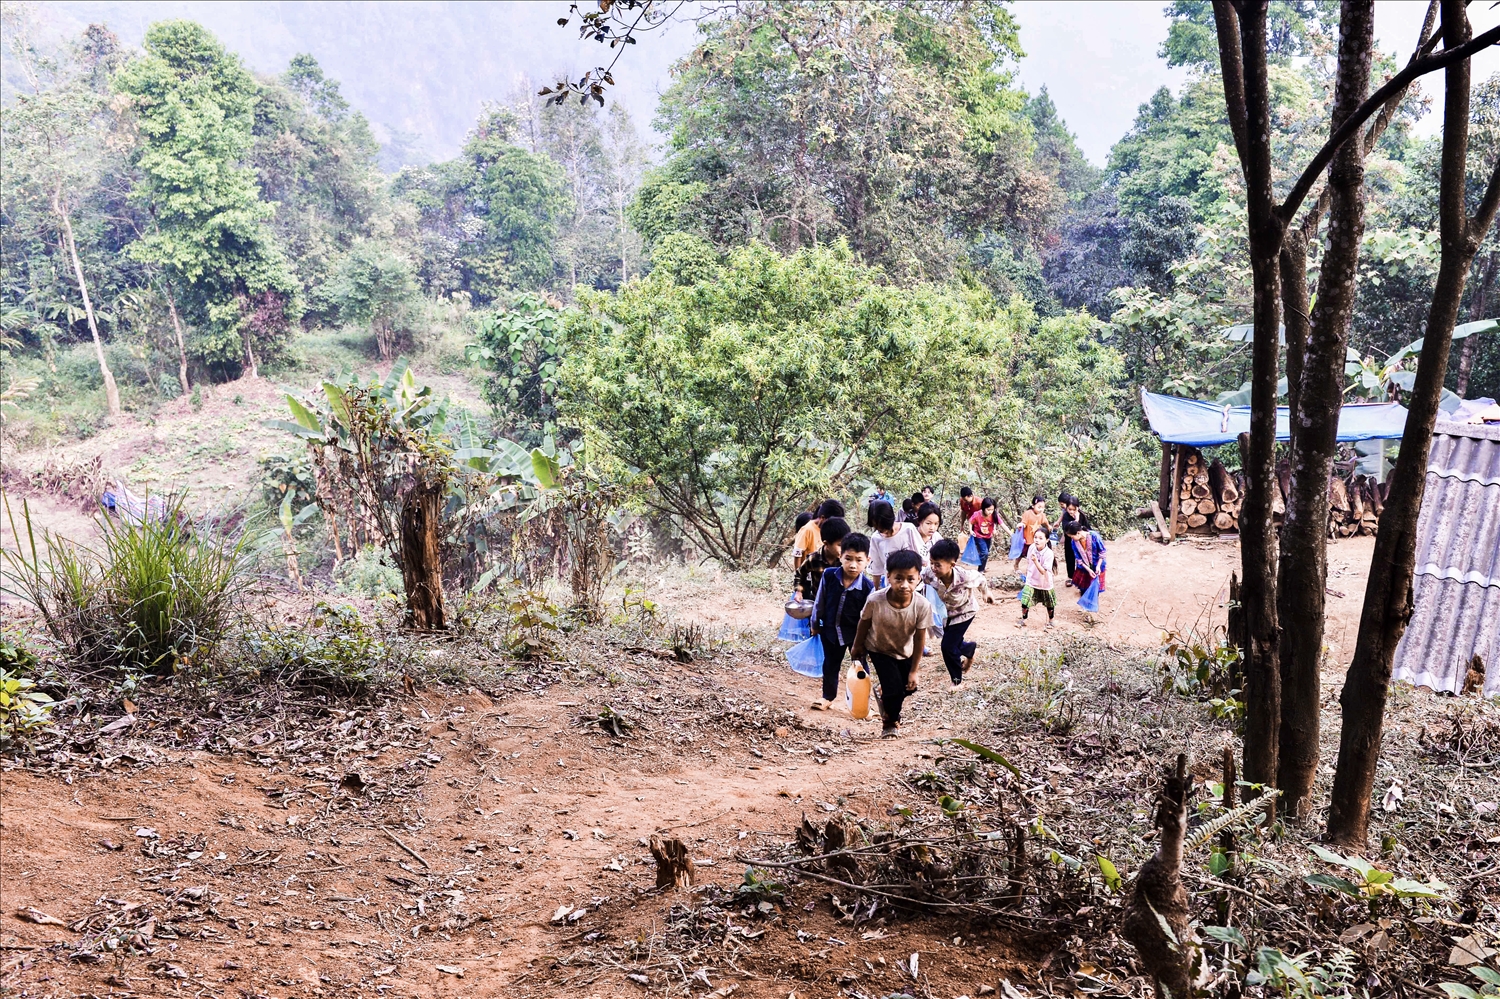 Con đường “tìm nước” mỗi ngày của các em học sinh Trường Phổ thông Dân tộc bán trú Tiểu học Phìn Hồ là ở vực cánh rừng đầu nguồn, đường đi cheo lao, dốc thẳng đứng, nên vật dụng của thầy cô mang lấy nước là can nhỏ và túi ni nong